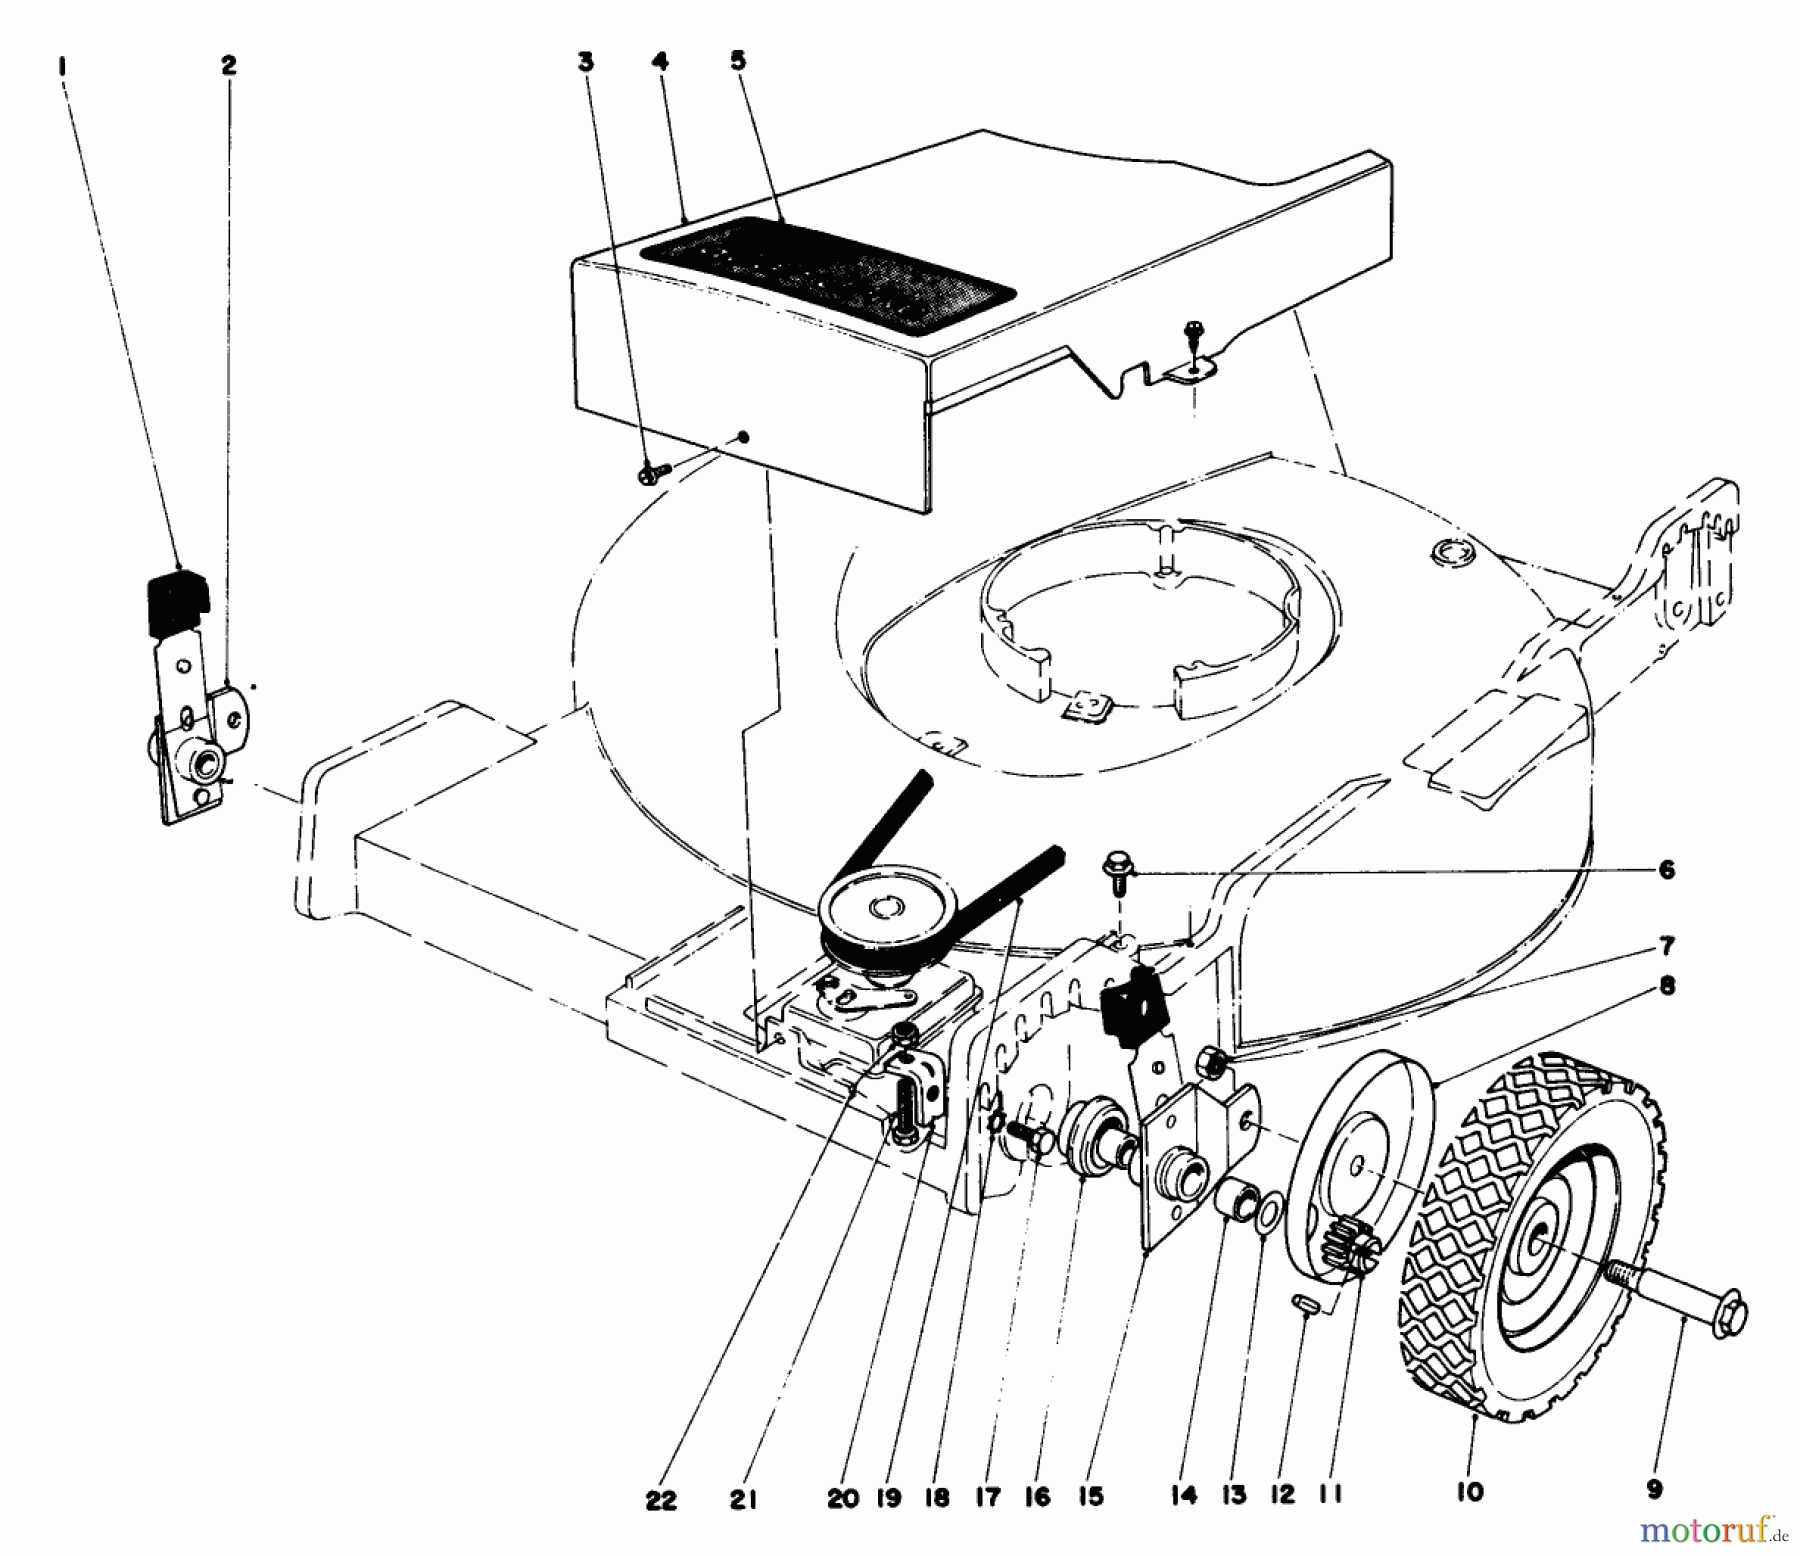  Toro Neu Mowers, Walk-Behind Seite 1 16756 - Toro Lawnmower, 1978 (8000001-8999999) FRONT WHEEL AND PIVOT ARM ASSEMBLY